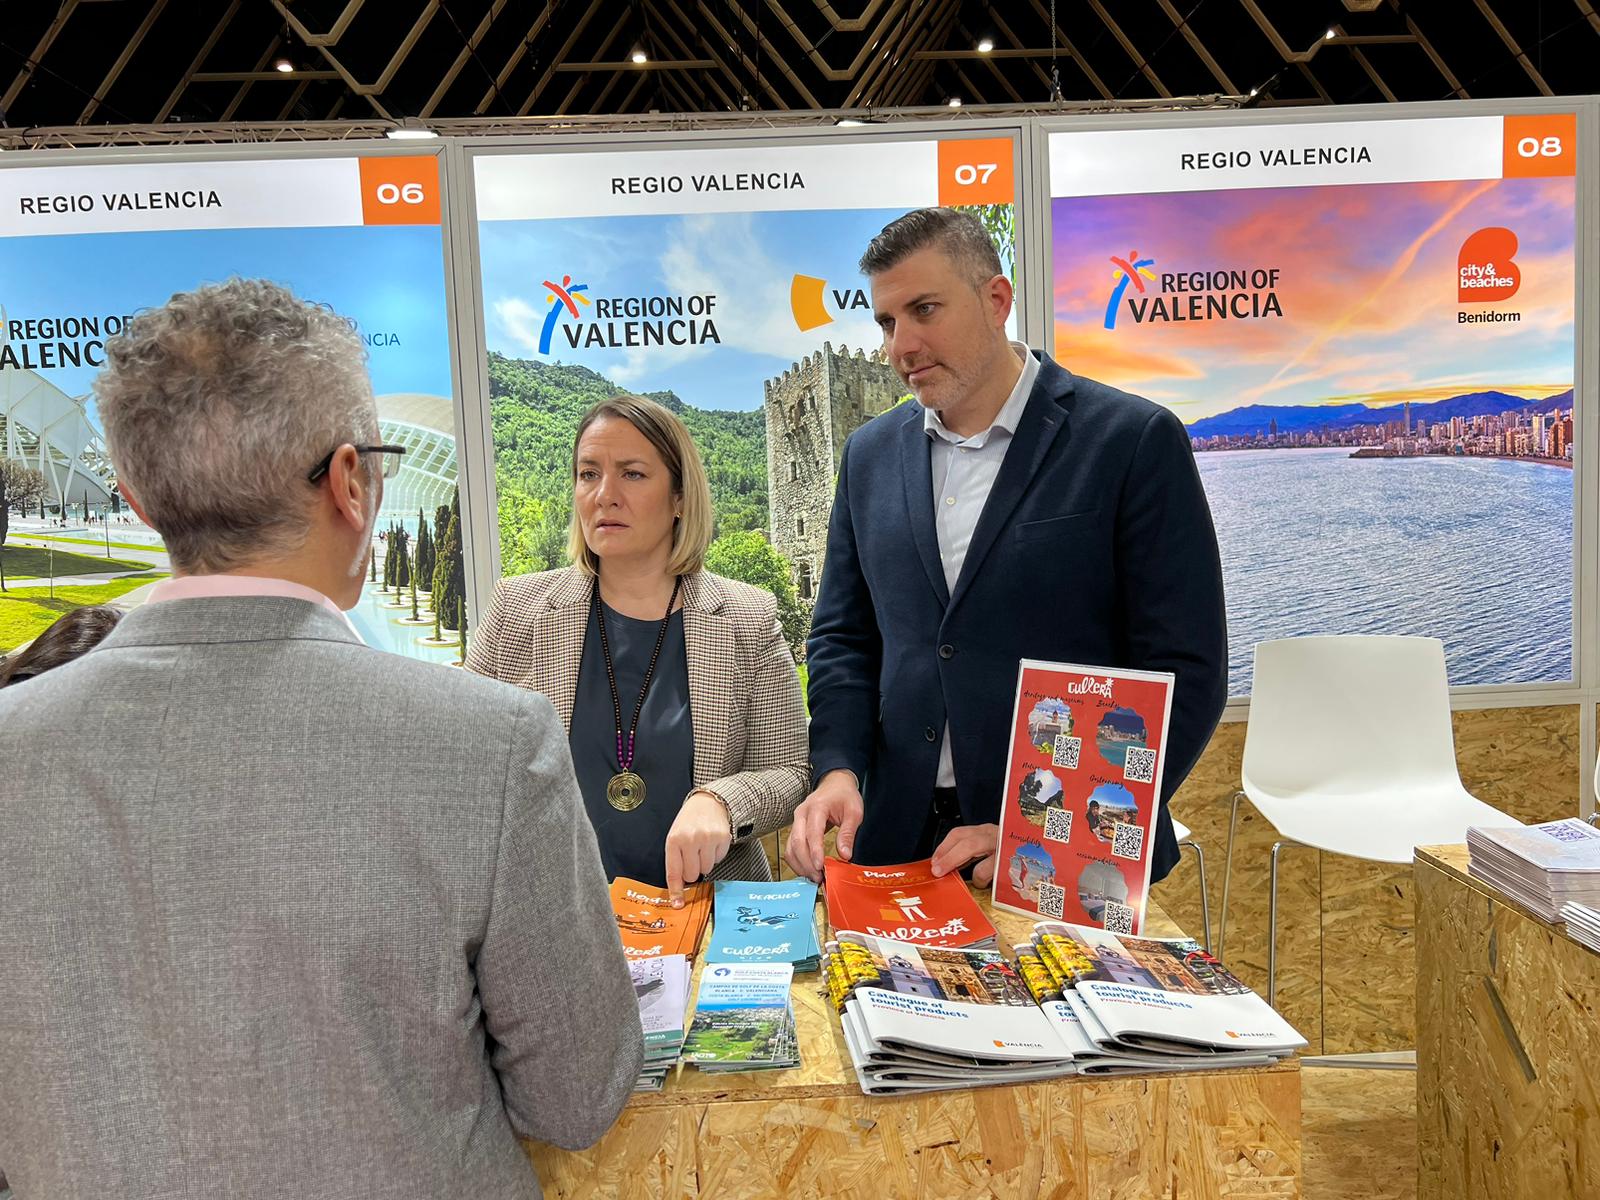 La Diputació de València participa en la Feria Internacional de Turismo de Utrecht en los Países Bajos